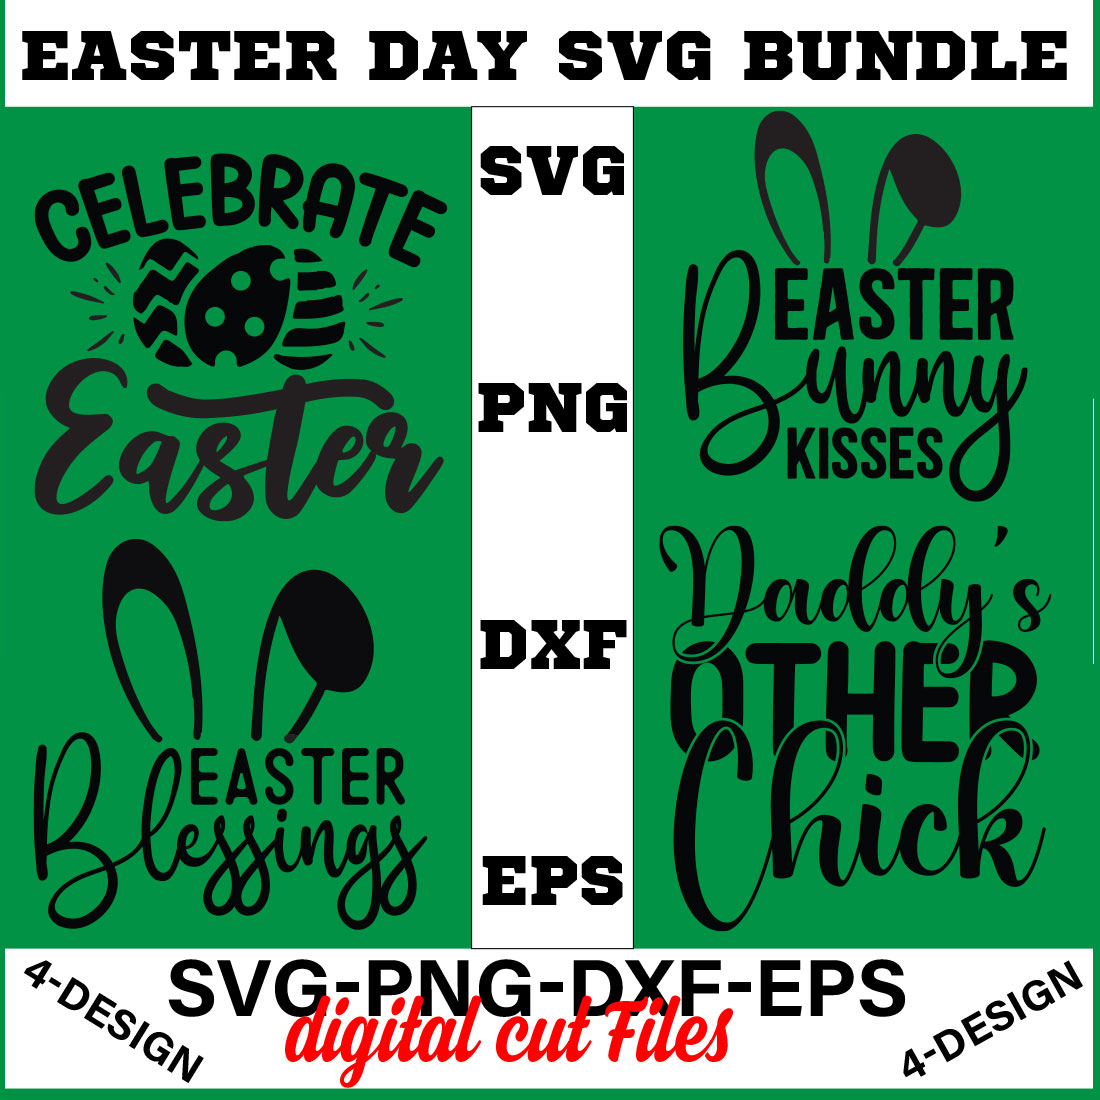 Happy Easter SVG Bundle, Easter SVG, Easter quotes, Easter Bunny svg, Easter Egg svg, Volume-06 cover image.